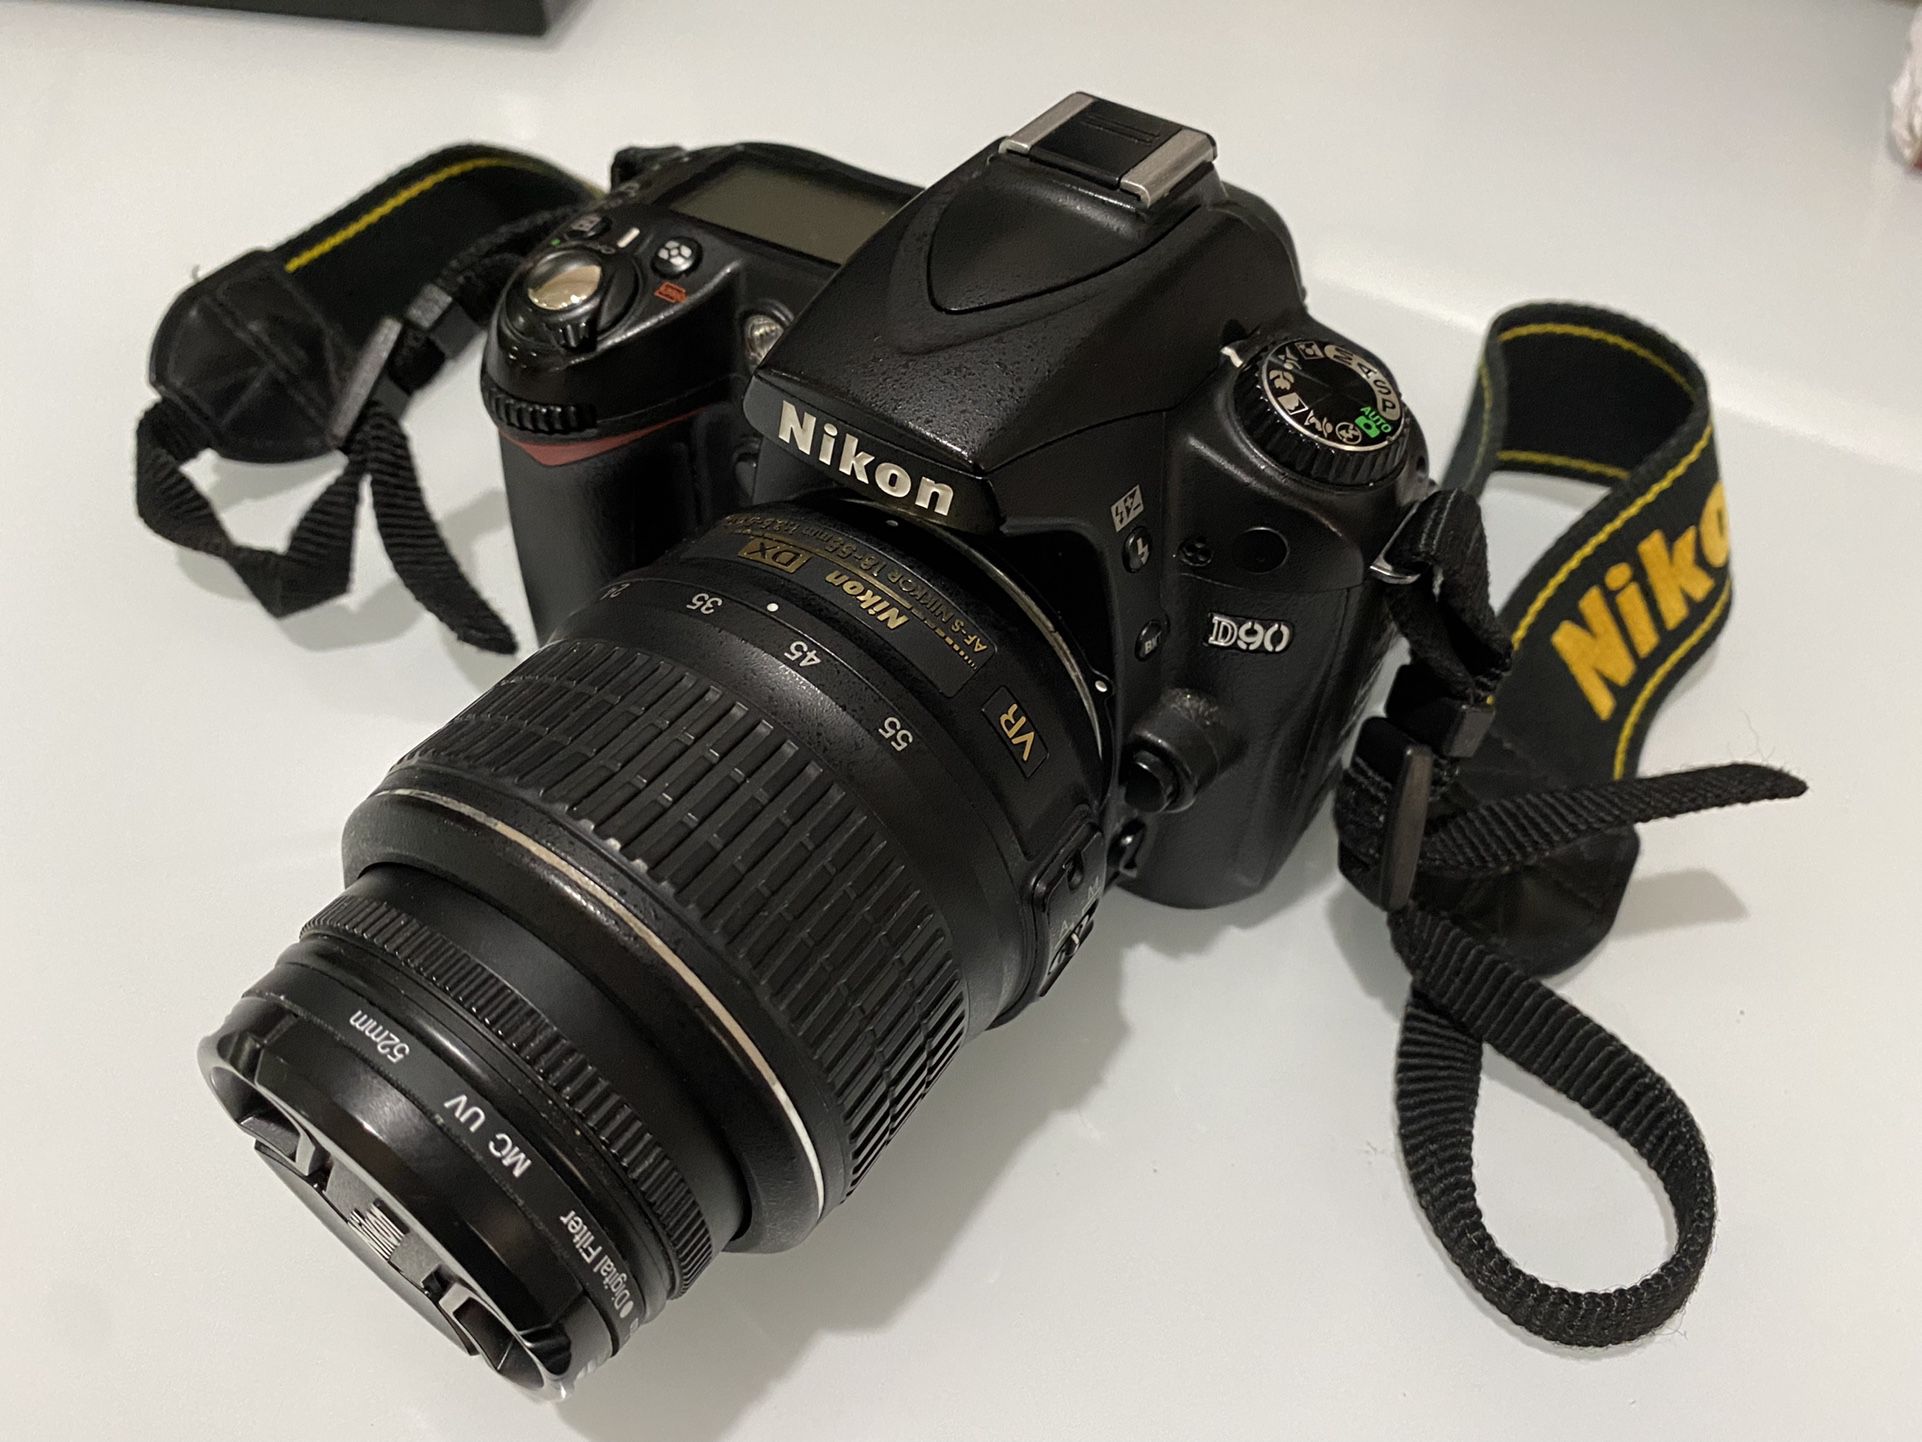 Nikon D90 DSLR Camera with 2 lenses